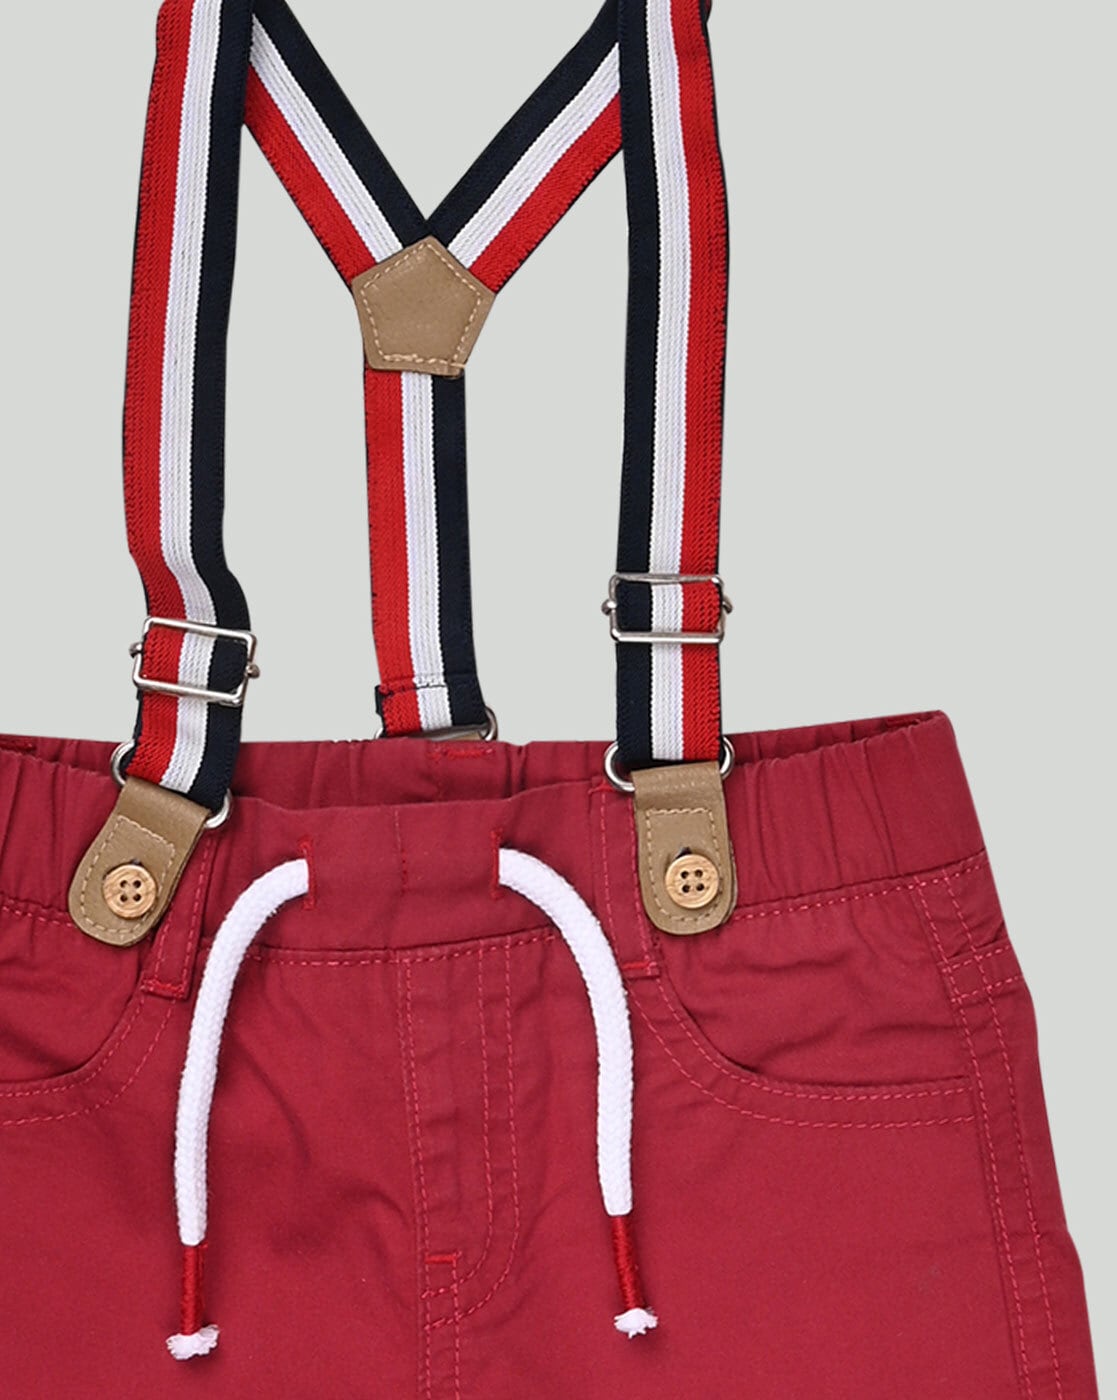 Amazoncom OshKosh BGosh Girls Suspender Embroidered Jeans NB5T 6M  Denim 1 Clothing Shoes  Jewelry